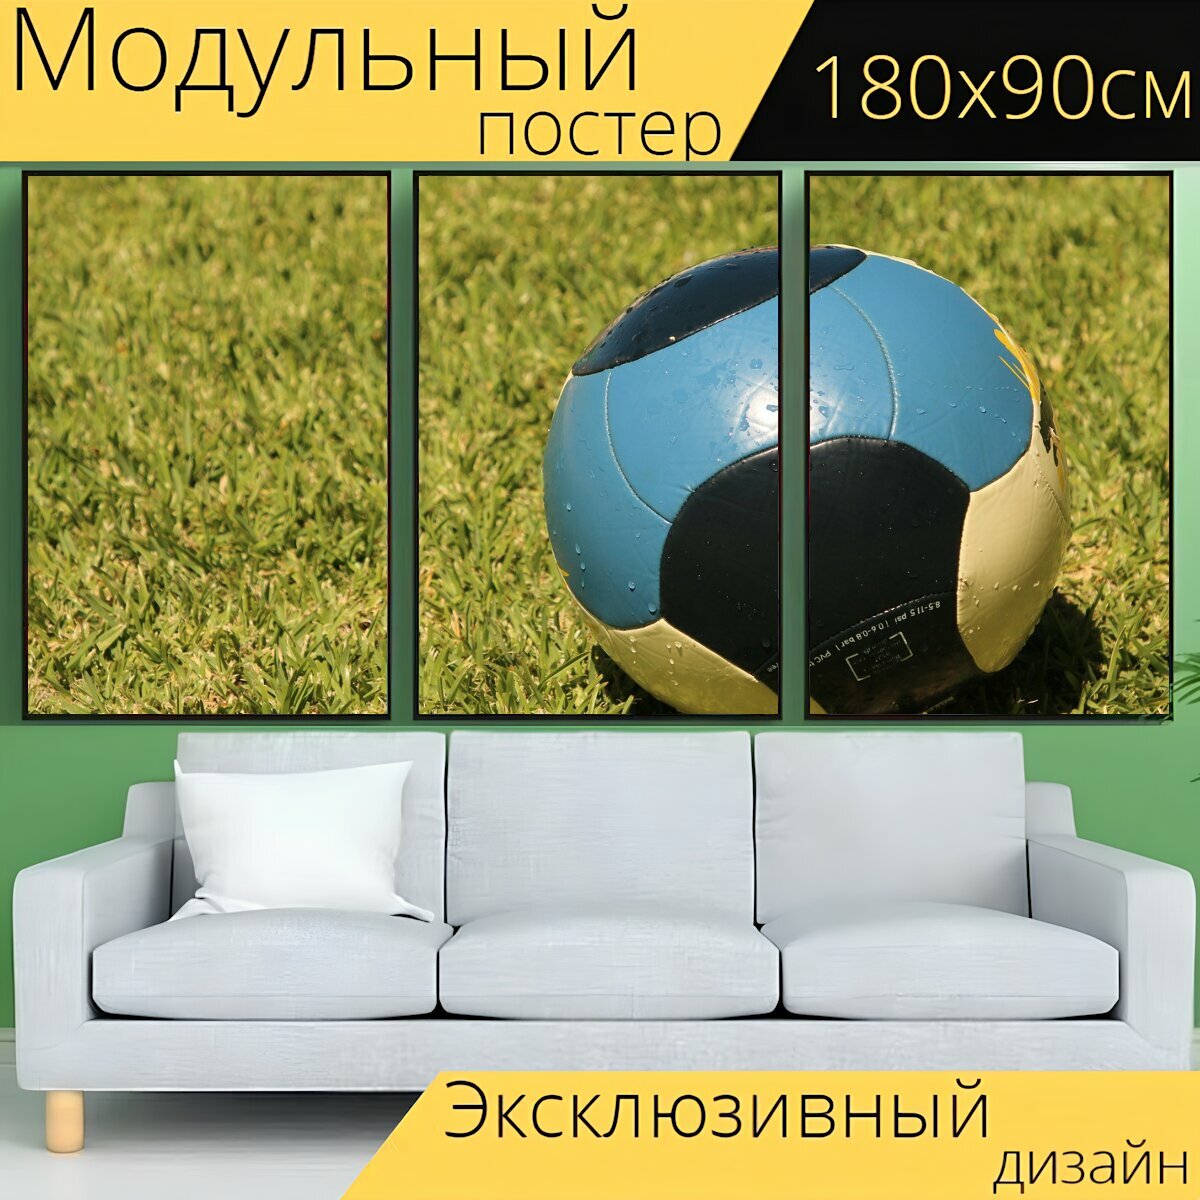 Модульный постер "Мяч, лужайка, футбол" 180 x 90 см. для интерьера